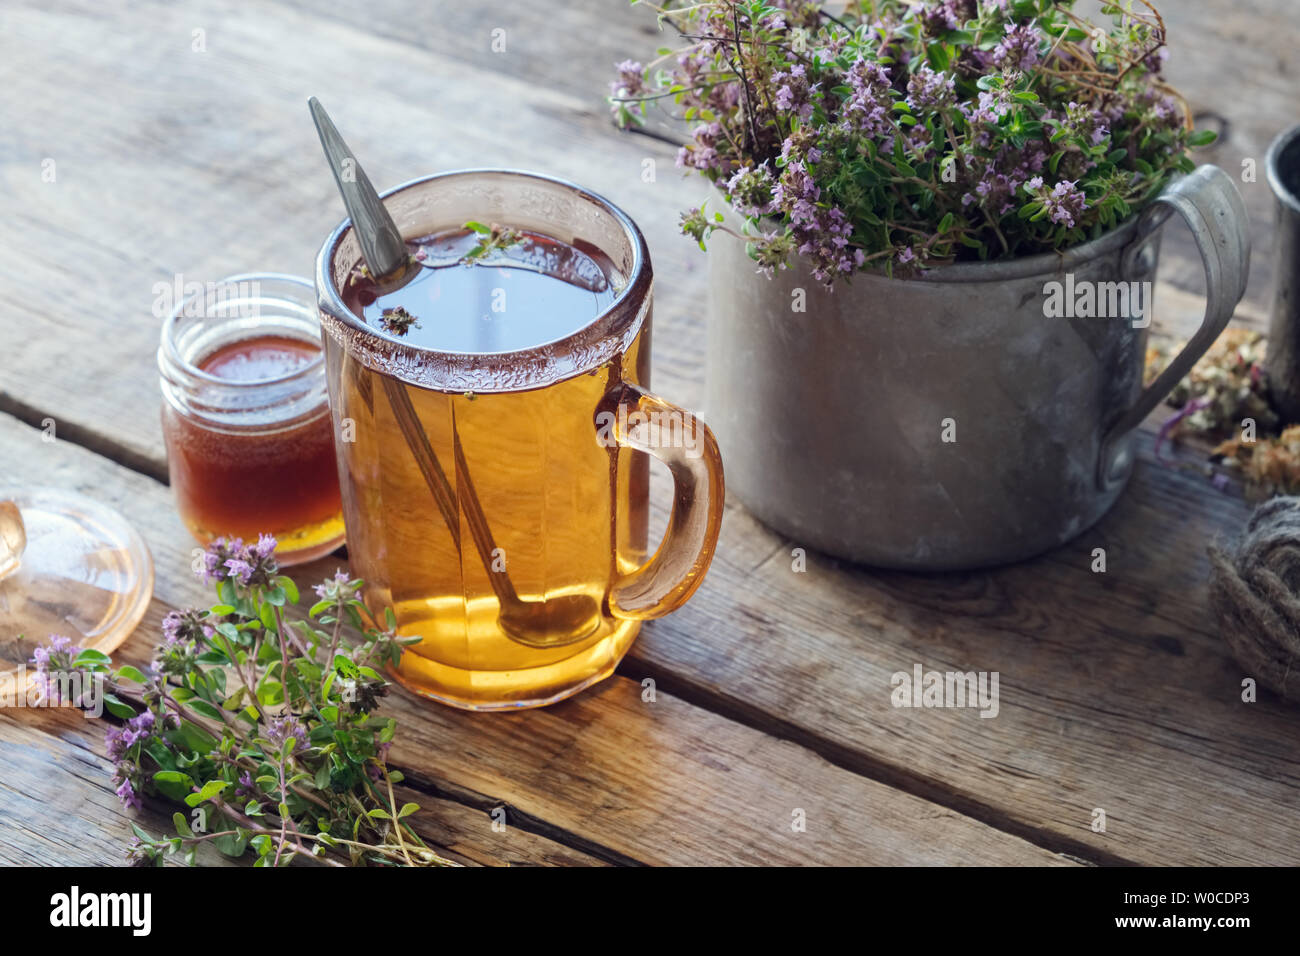 Mug of thyme healthy herbal tea, honey jar and rustic metal cup full of thymus serpyllum medicinal herbs. Stock Photo